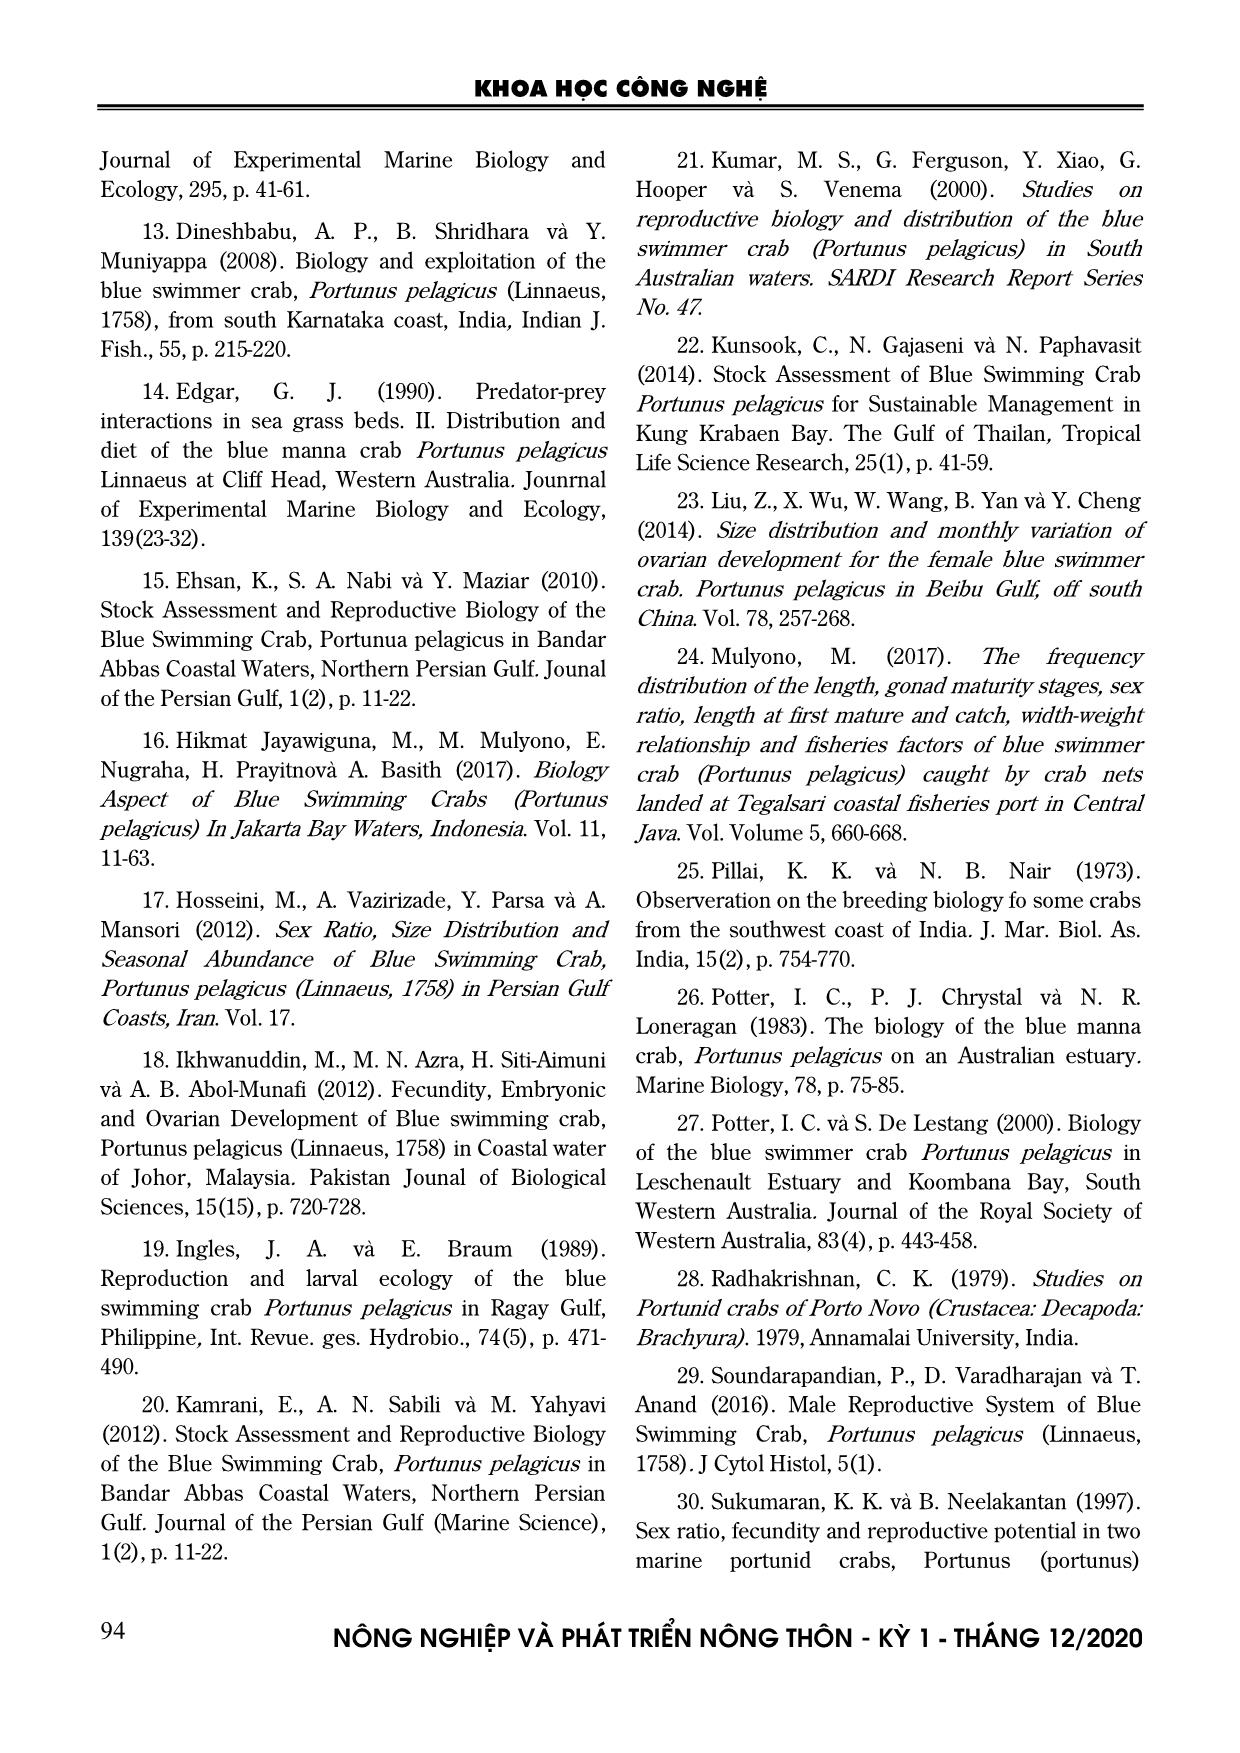 Đặc điểm sinh học sinh sản của loài ghẹ xanh Portunus pelagicus (Linnaeus, 1758) ở vùng biển Kiên Giang trang 10